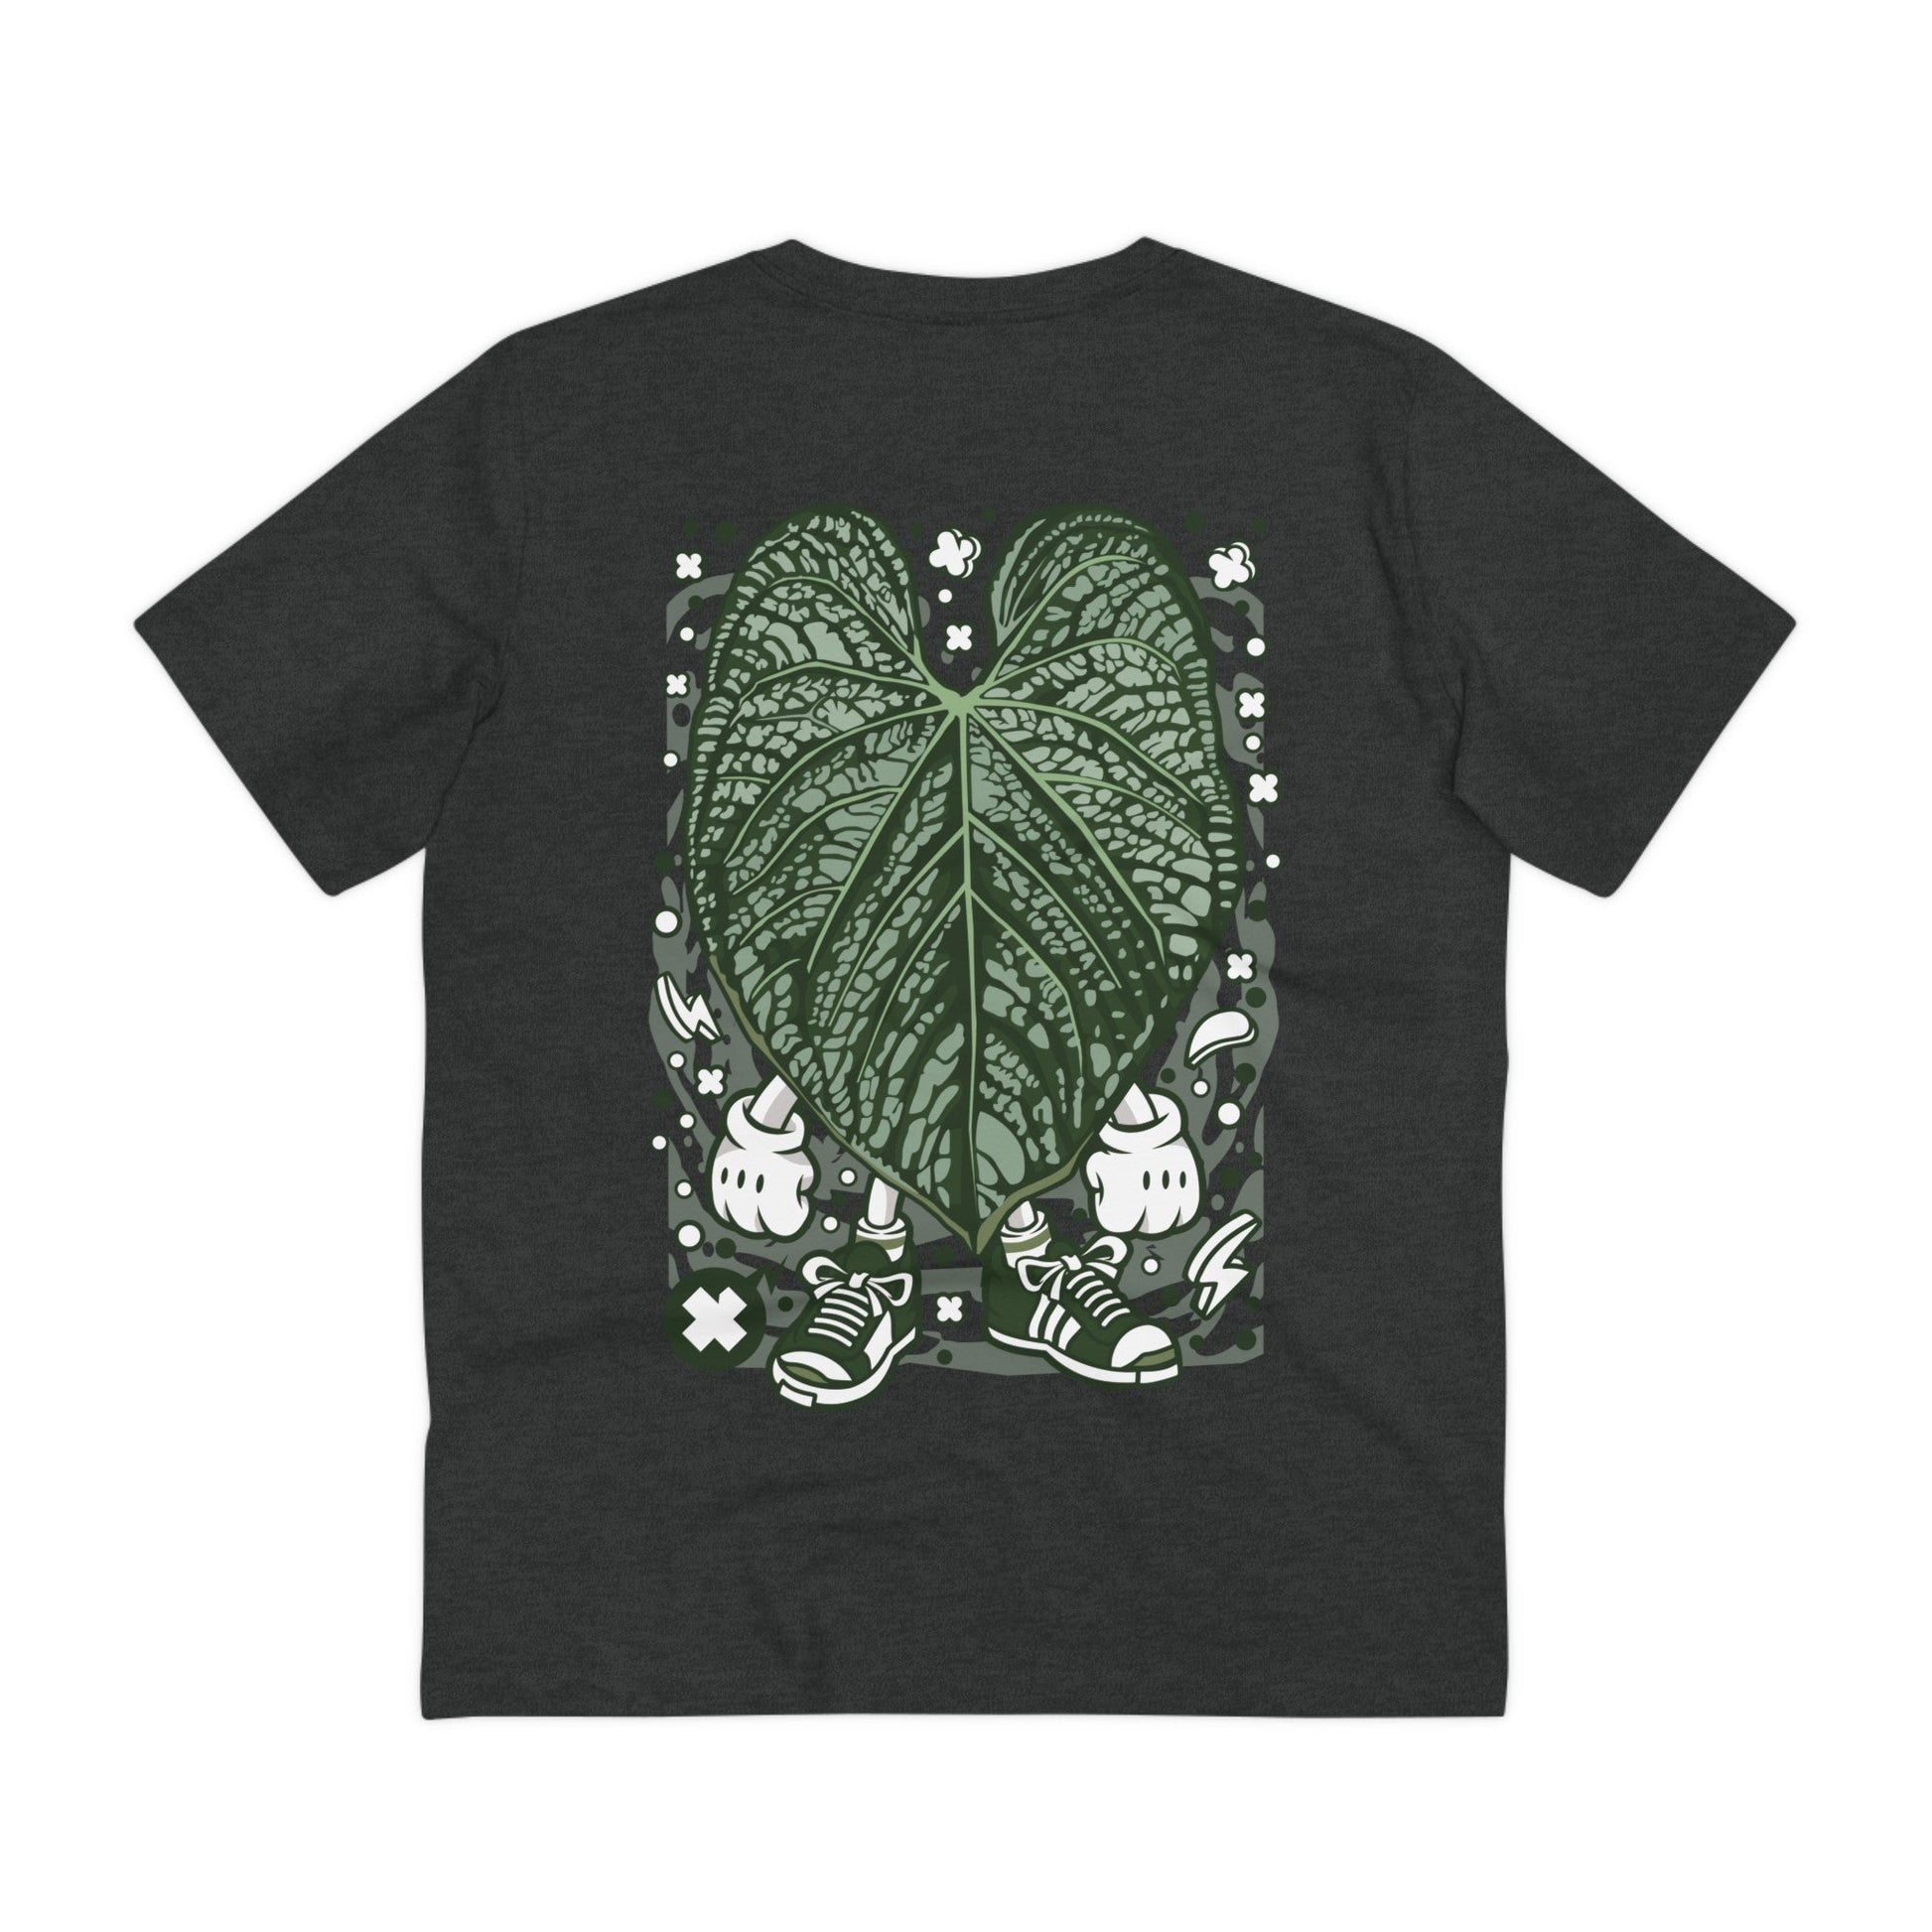 Printify T-Shirt Dark Heather Grey / 2XS Anthurium Luxurians - Cartoon Plants - Back Design